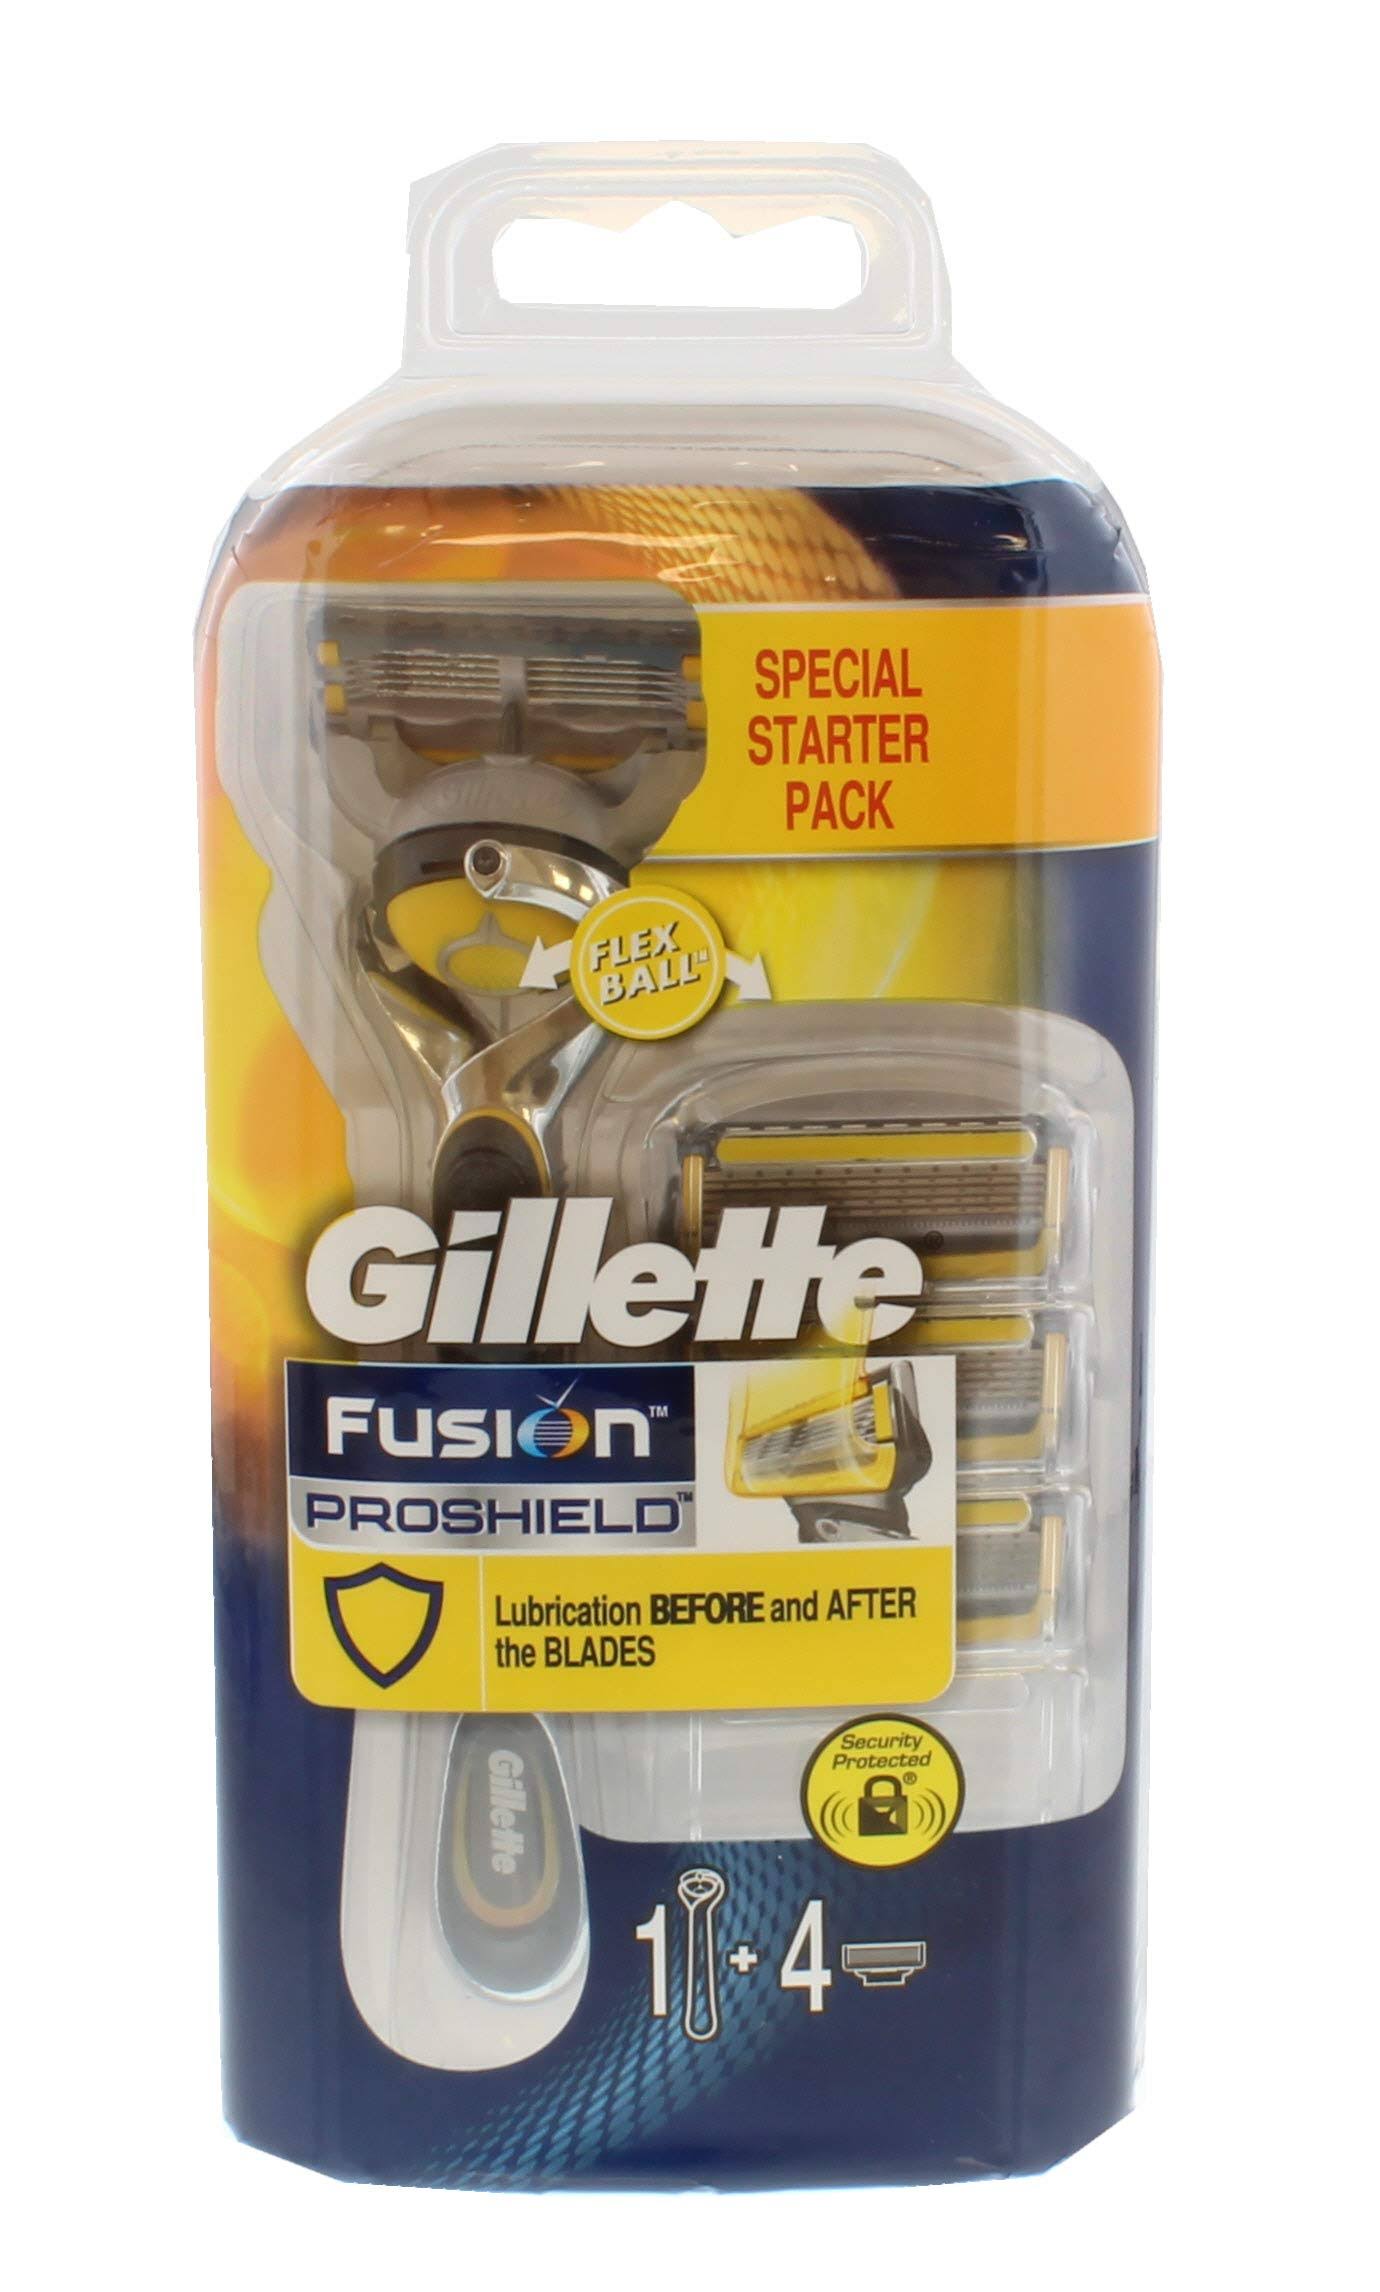 Gillette Fusion Pro Shield Flex Ball Men’s Razor - 4 Blades